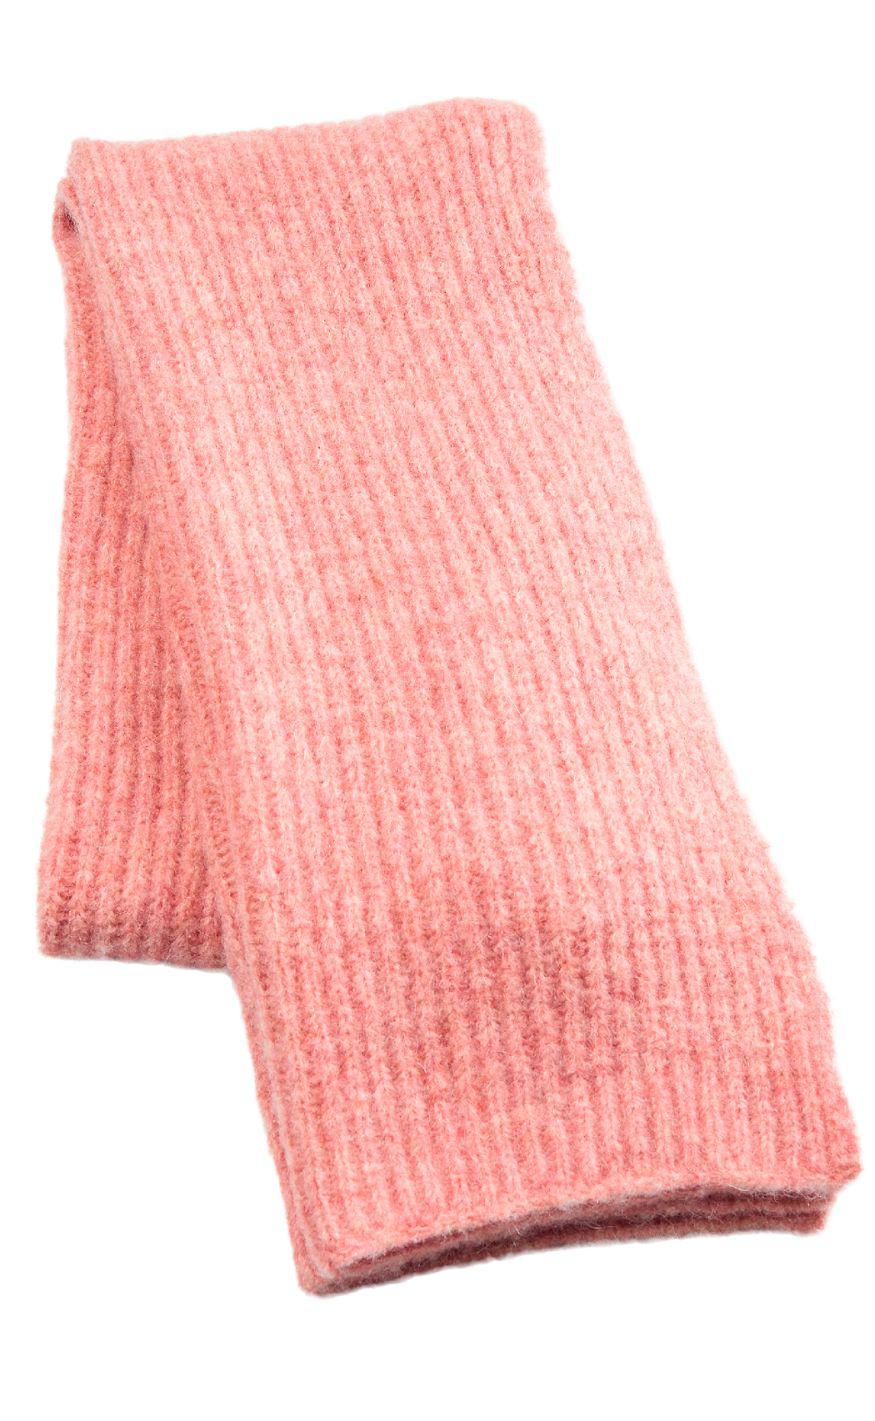 #1 på vores liste over tørklæder er Tørklæde